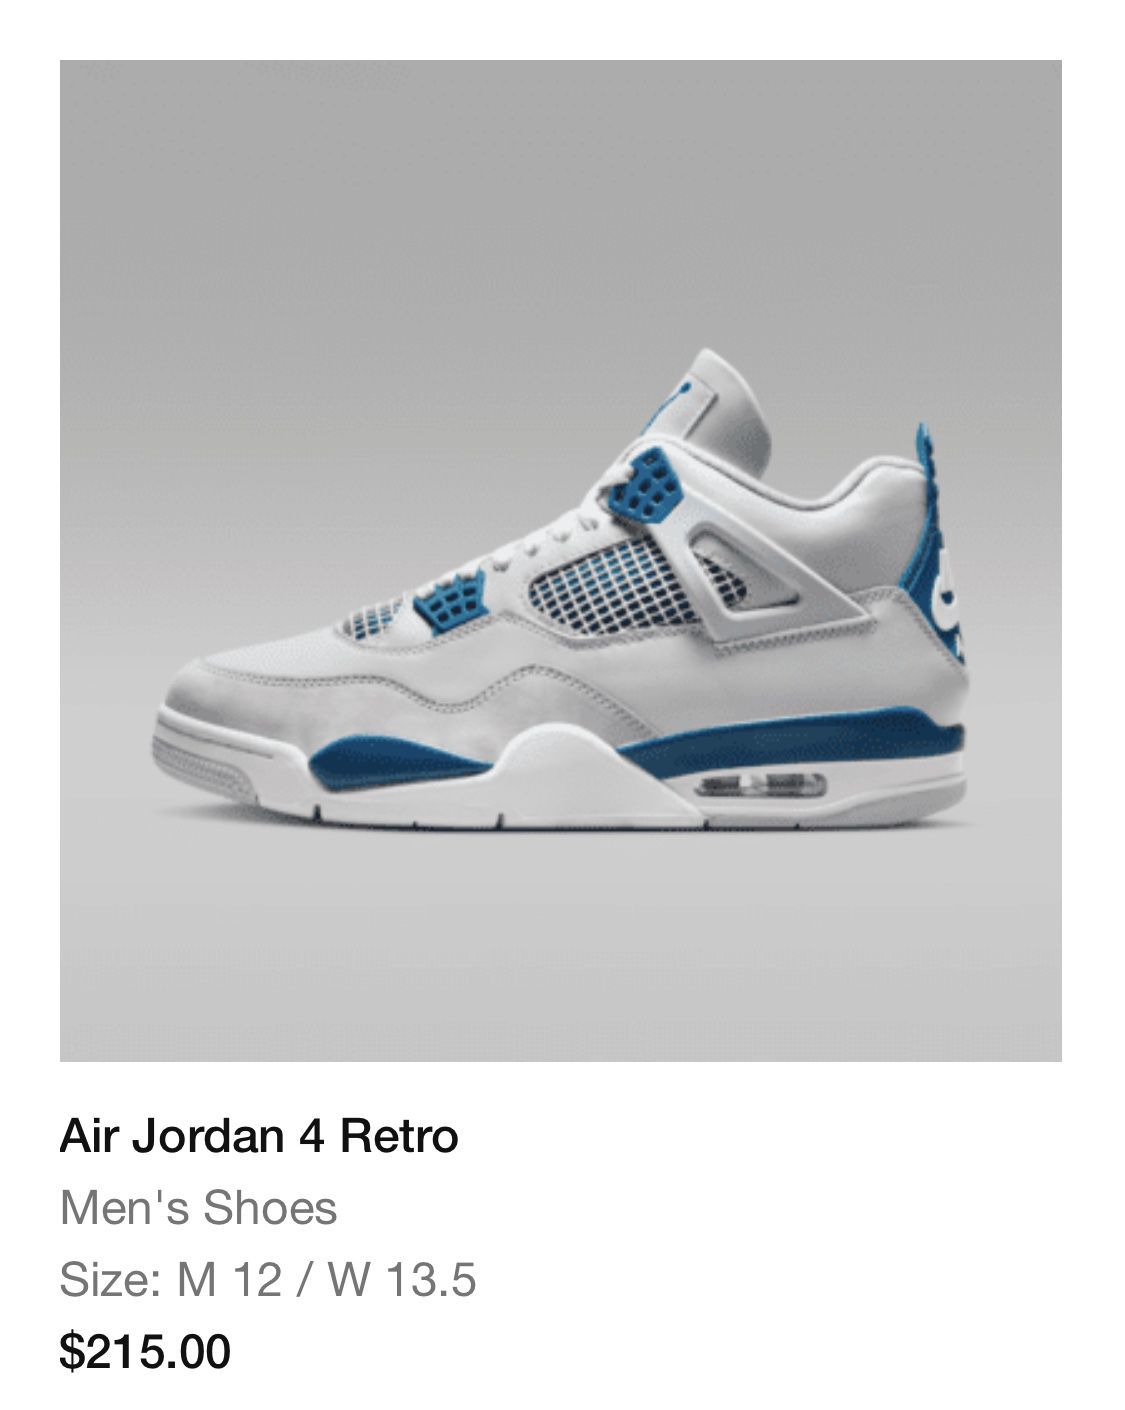 Jordan 4 Retro “Military Blue” Size 12